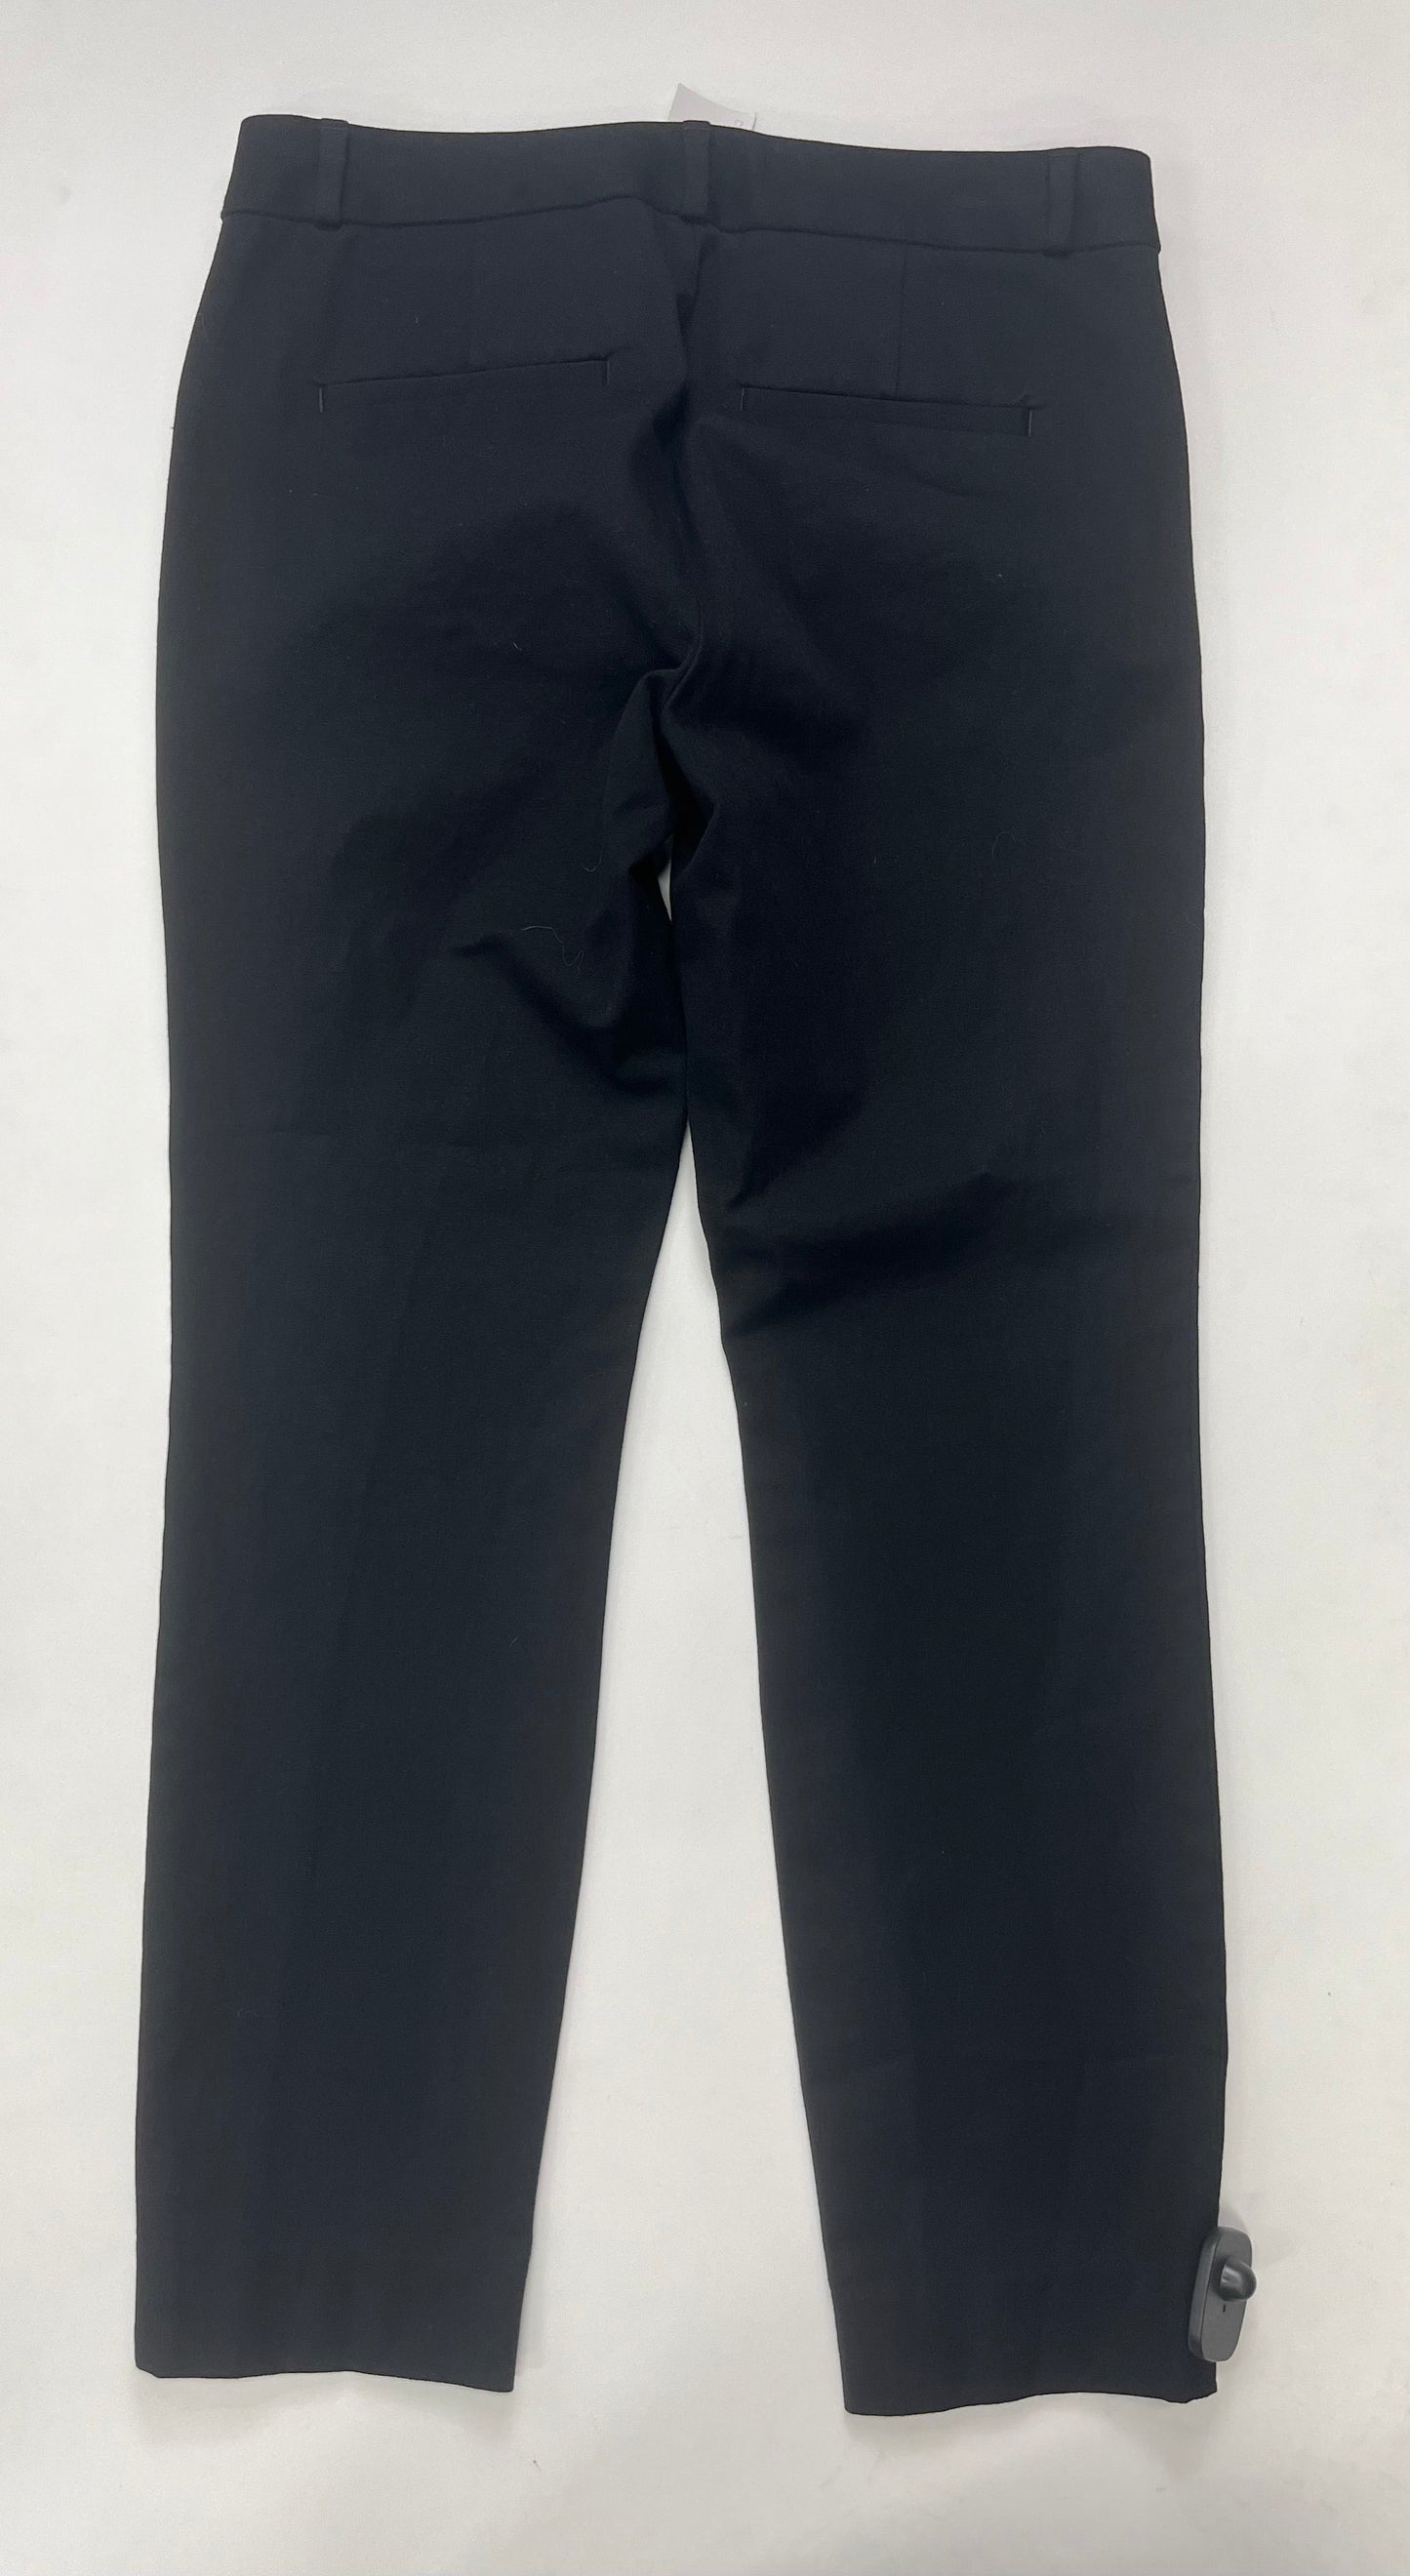 Black Pants Work/dress Banana Republic, Size 4